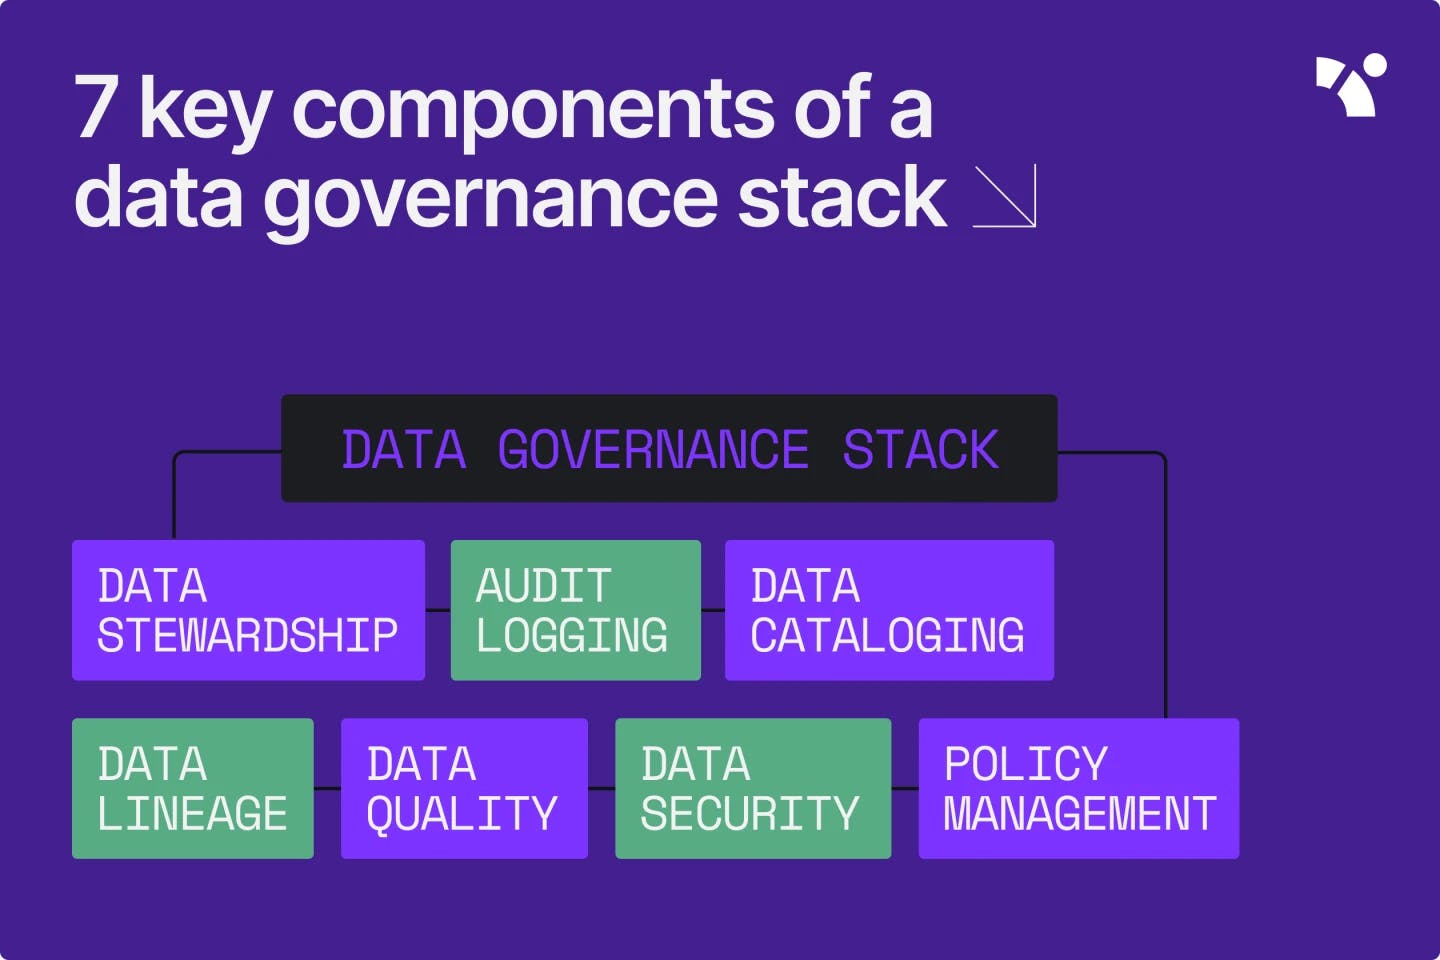 Data governance stack